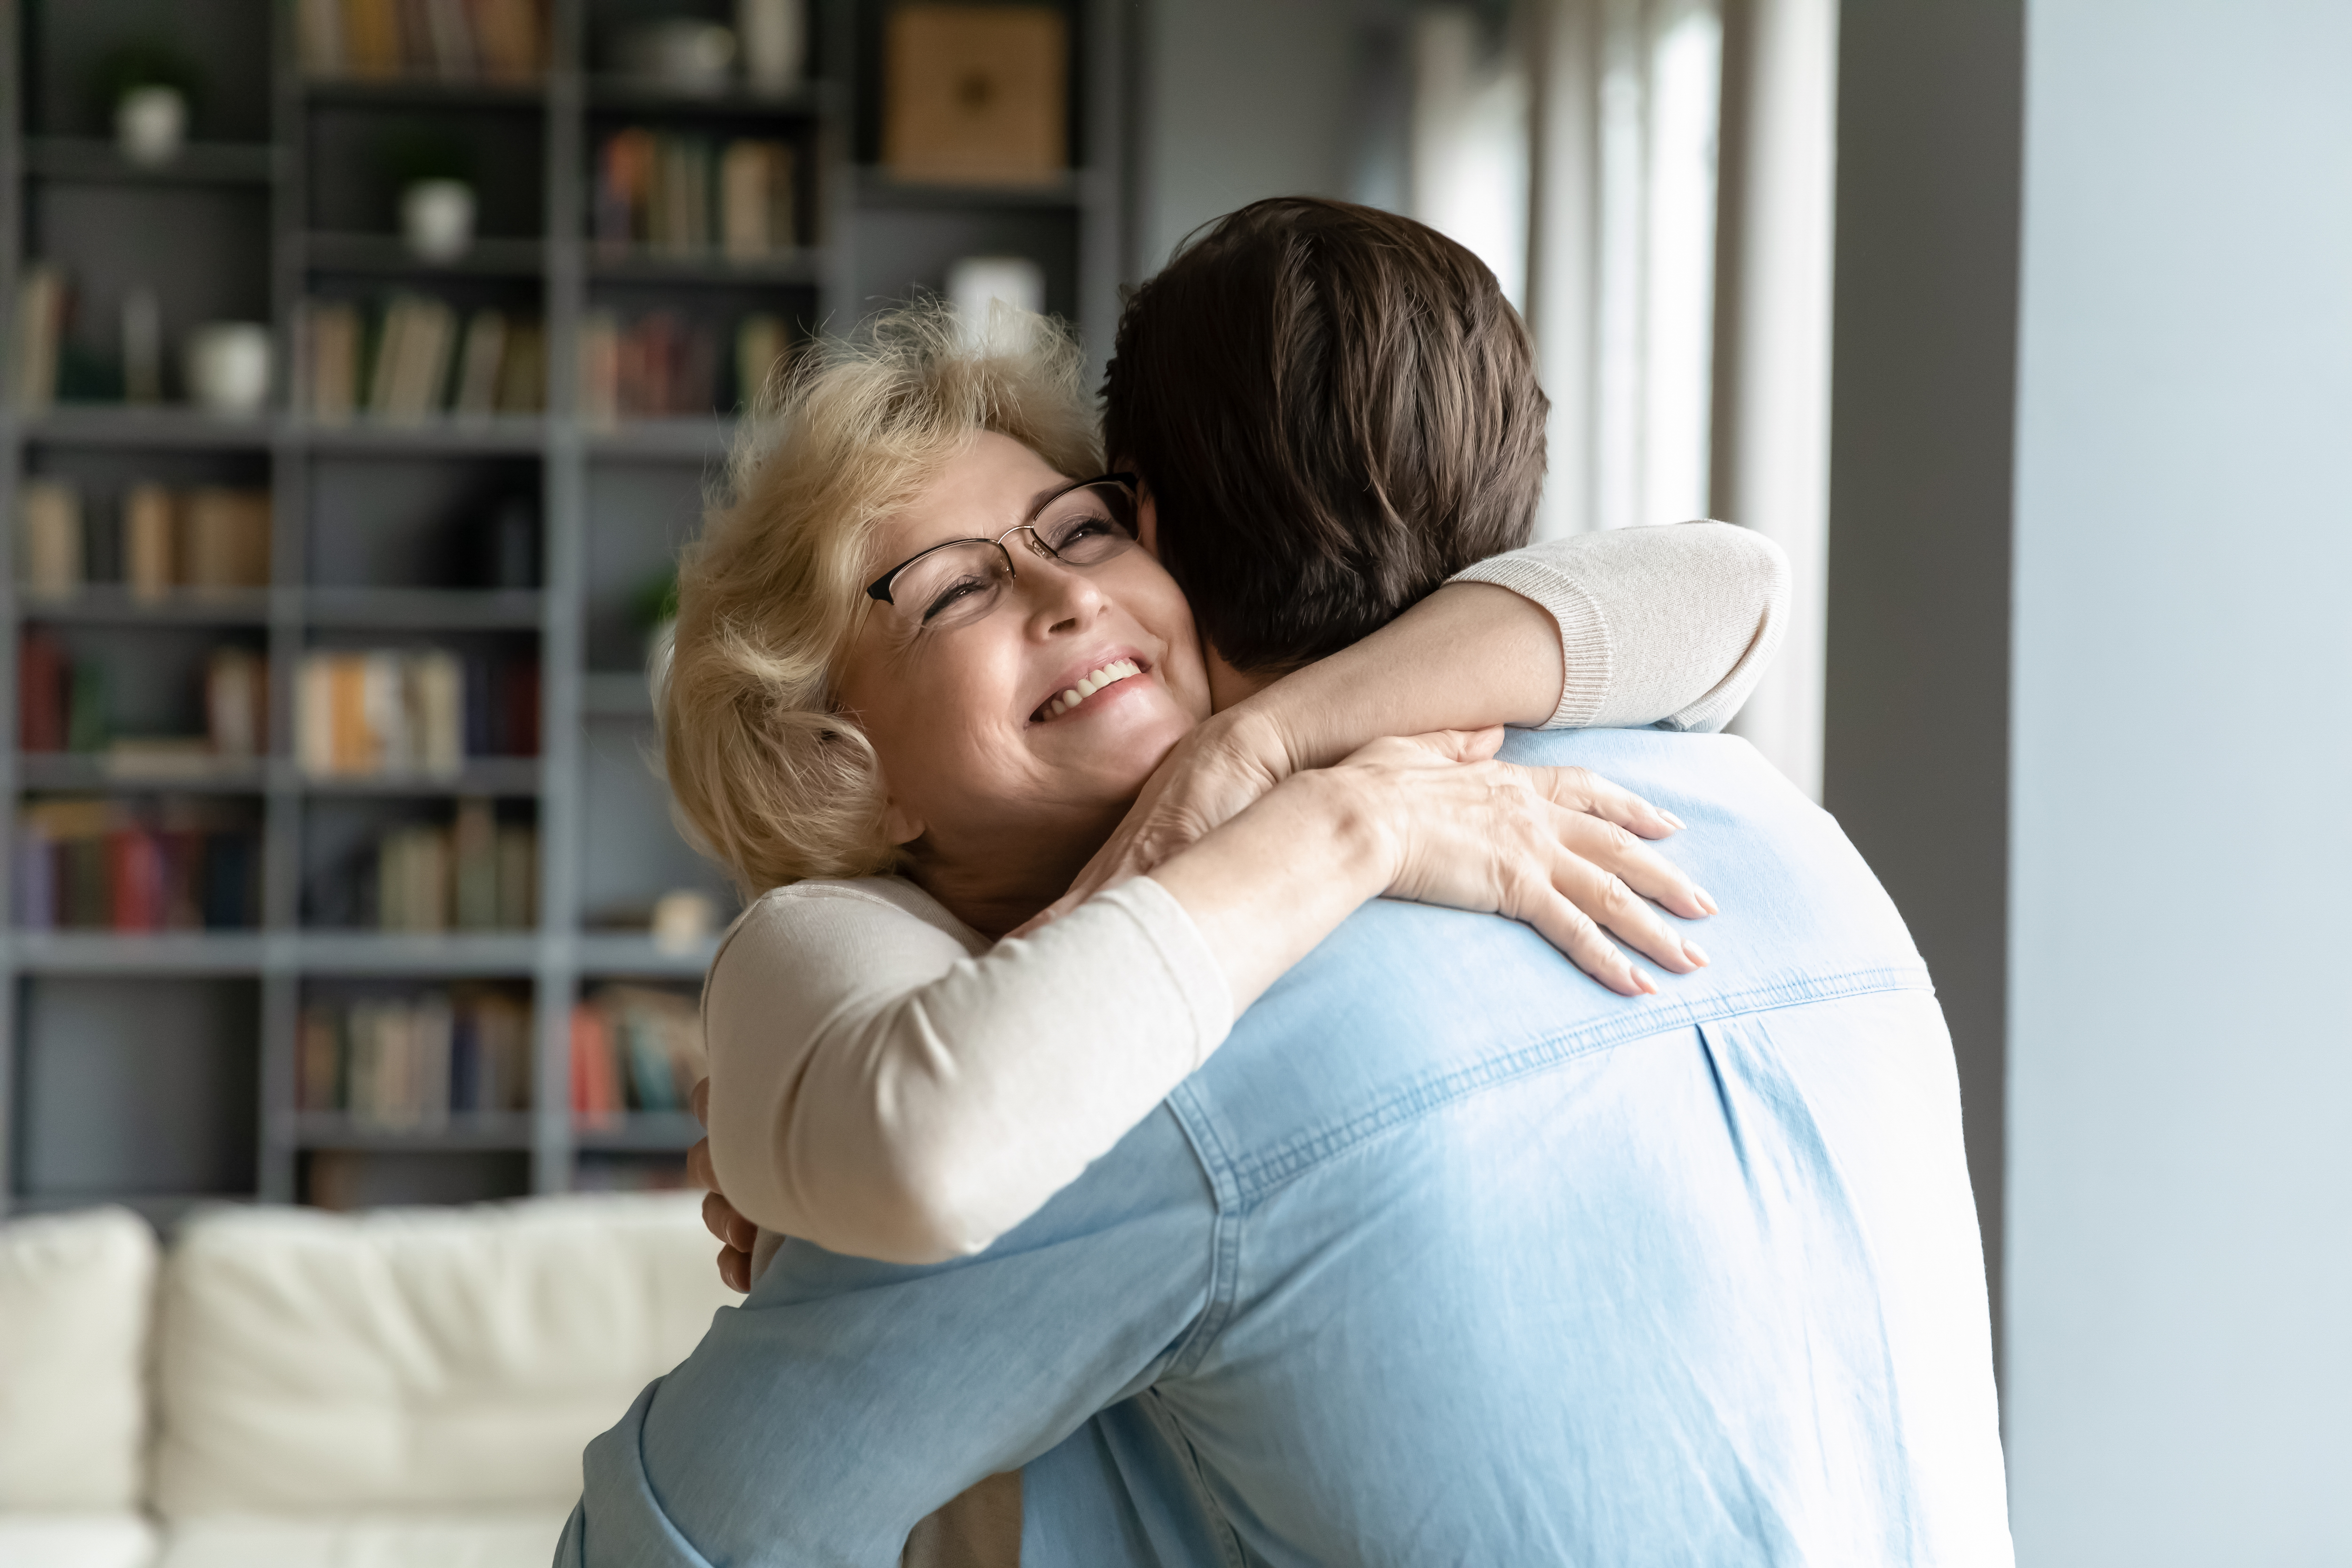 A woman hugging a grown man |Source: Shutterstock